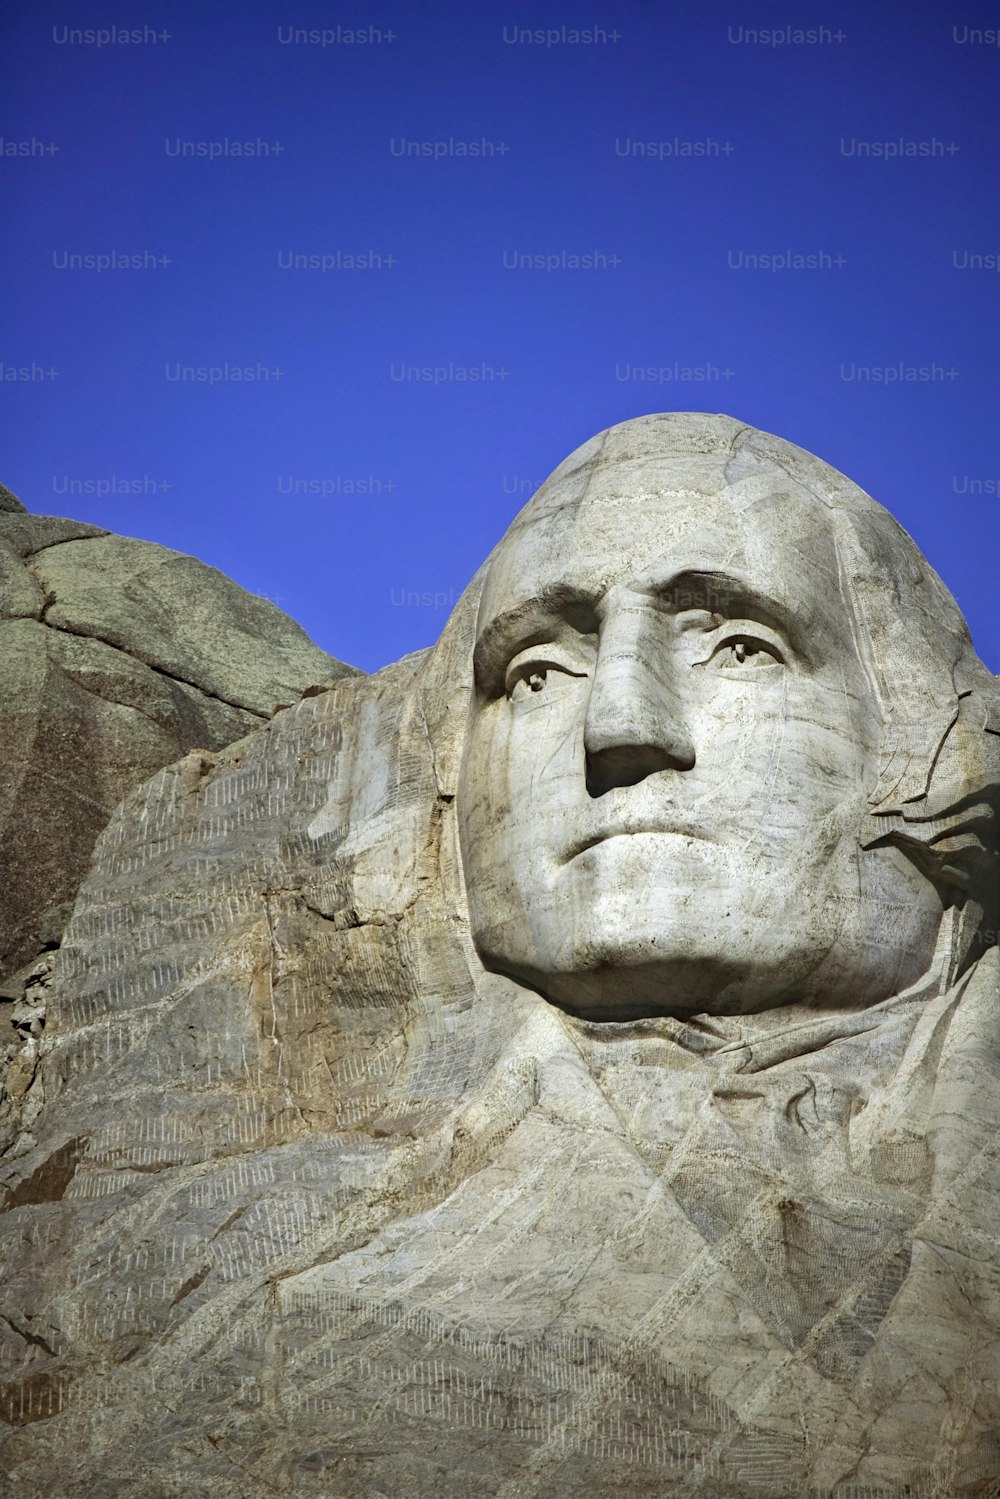 La cara de Abraham Lincoln tallada en la ladera de una montaña